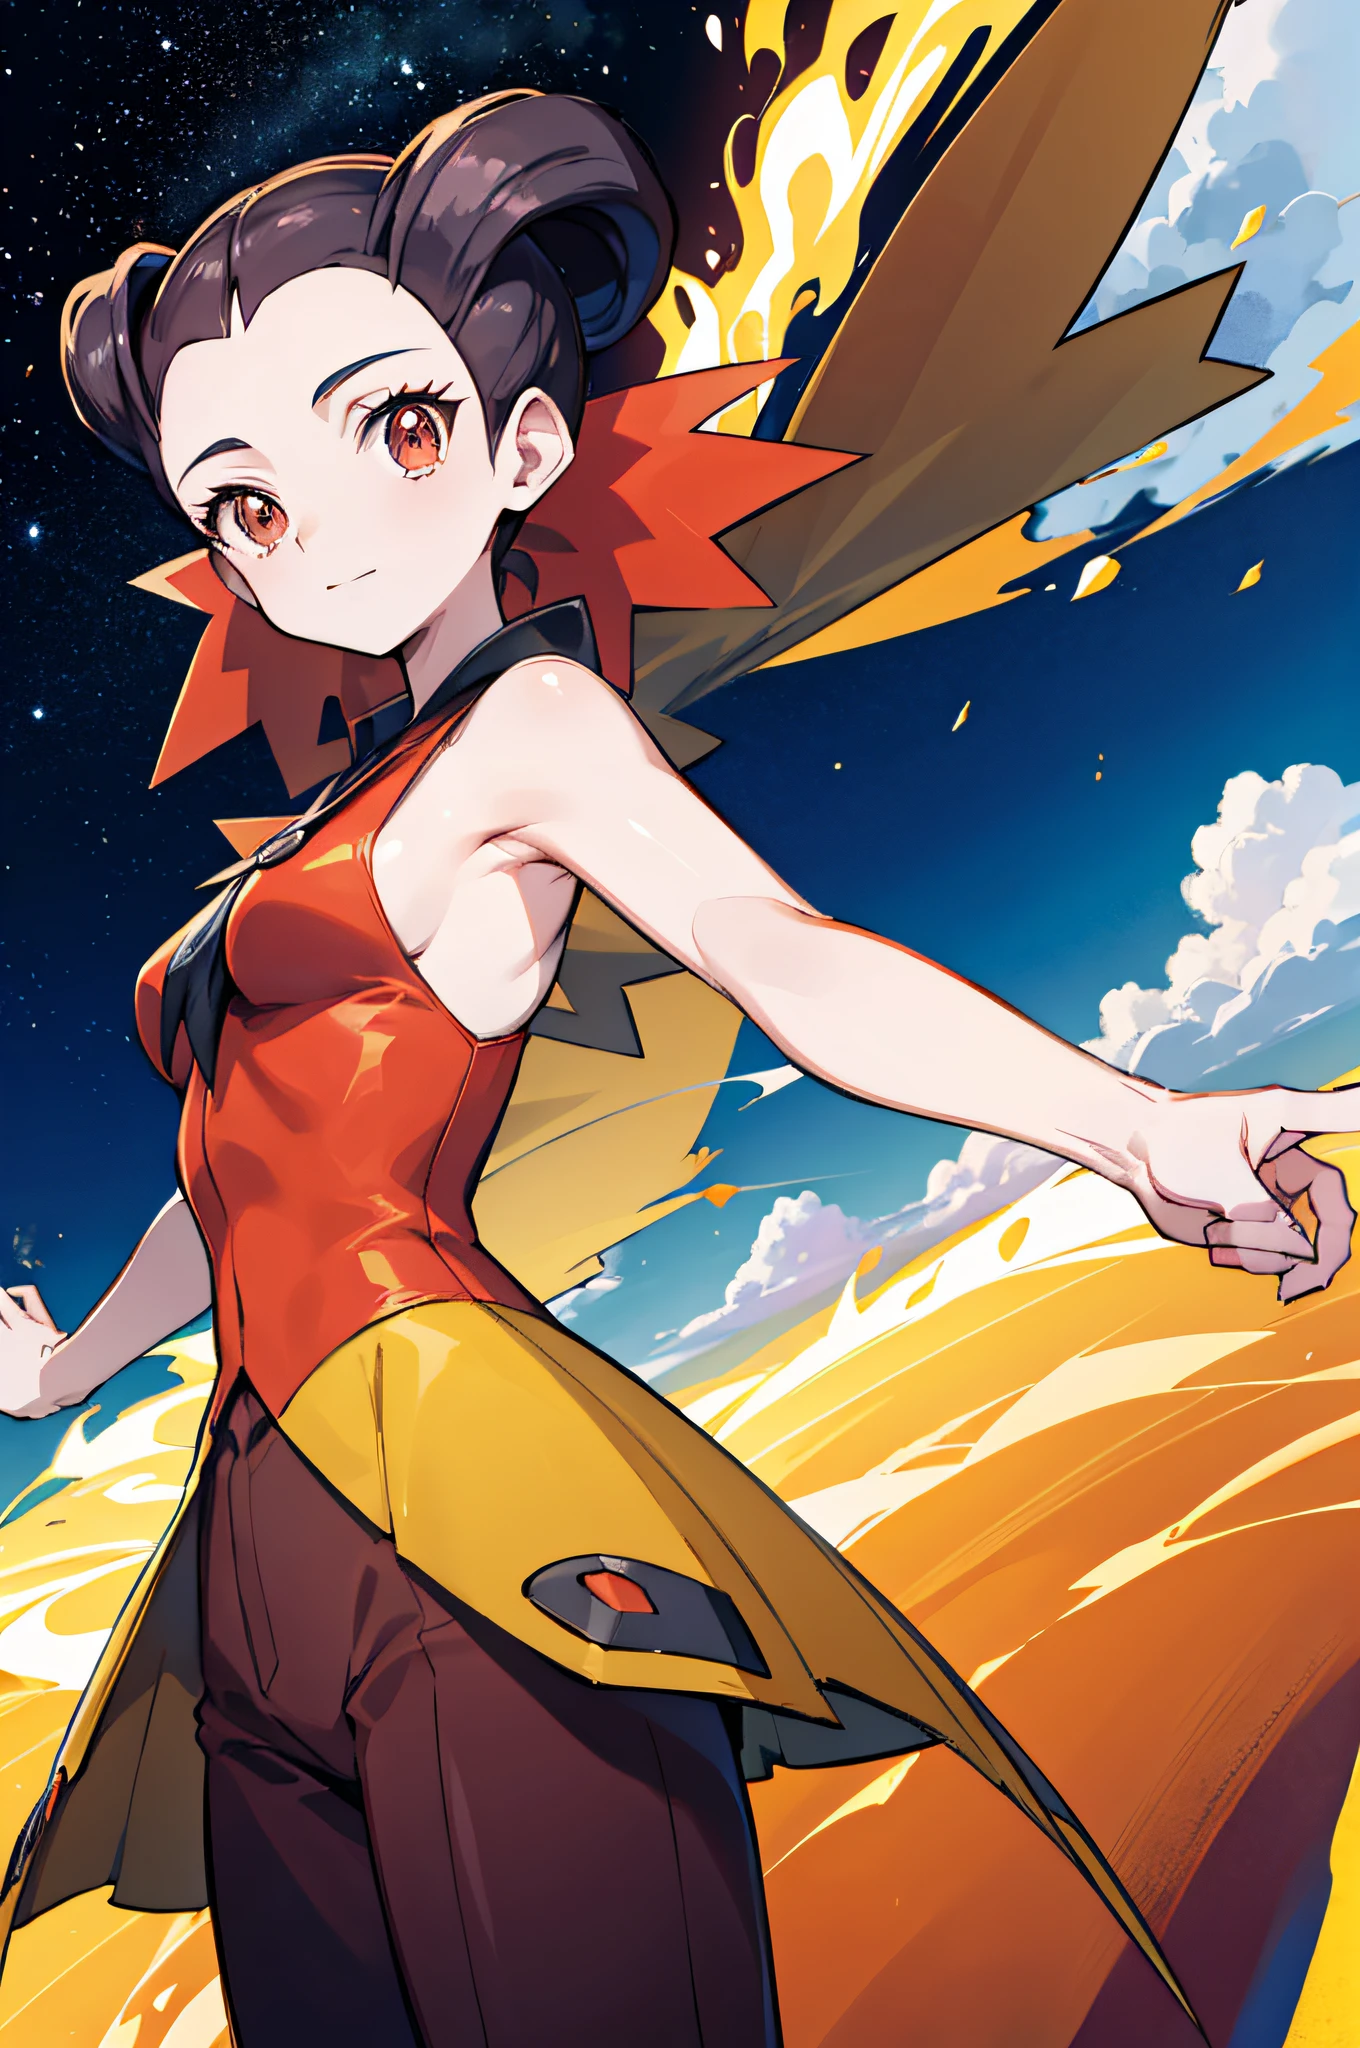 Anime-Stil, Die Umgebung voller Feuer, Mit Pokémon spielen , Roxanne( Charakter) ist in einem Standard-Outfit, lange Haare, braune Farbe, orangefarbene Augen, lächelnd, ultrarealistisch, Ganzkörper, 2D